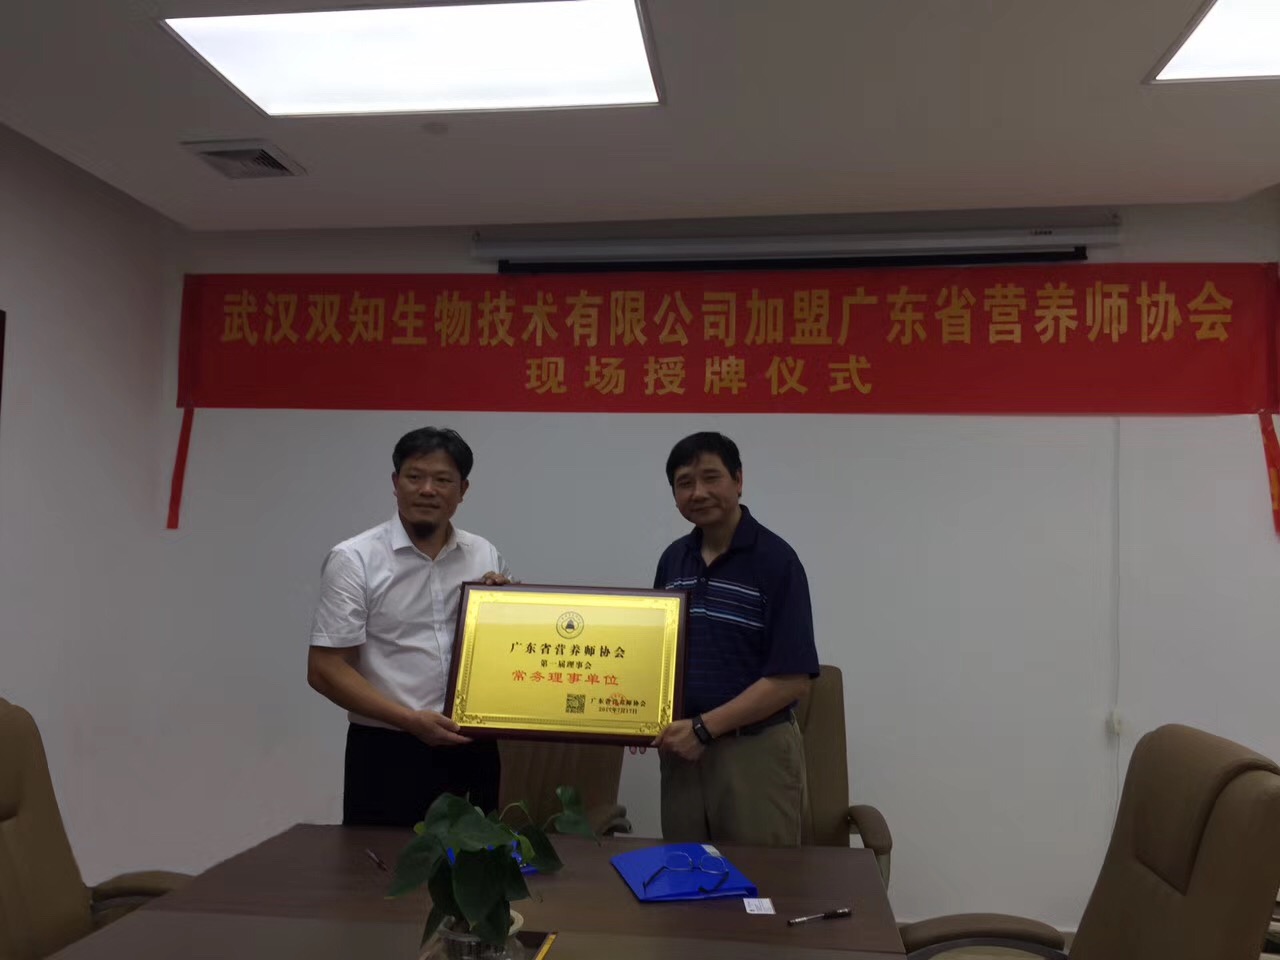 共同成就伟大梦想、助力双知企业飞翔---热烈欢迎武汉双知生物技术有限公司加入广东省营养师协会理事会